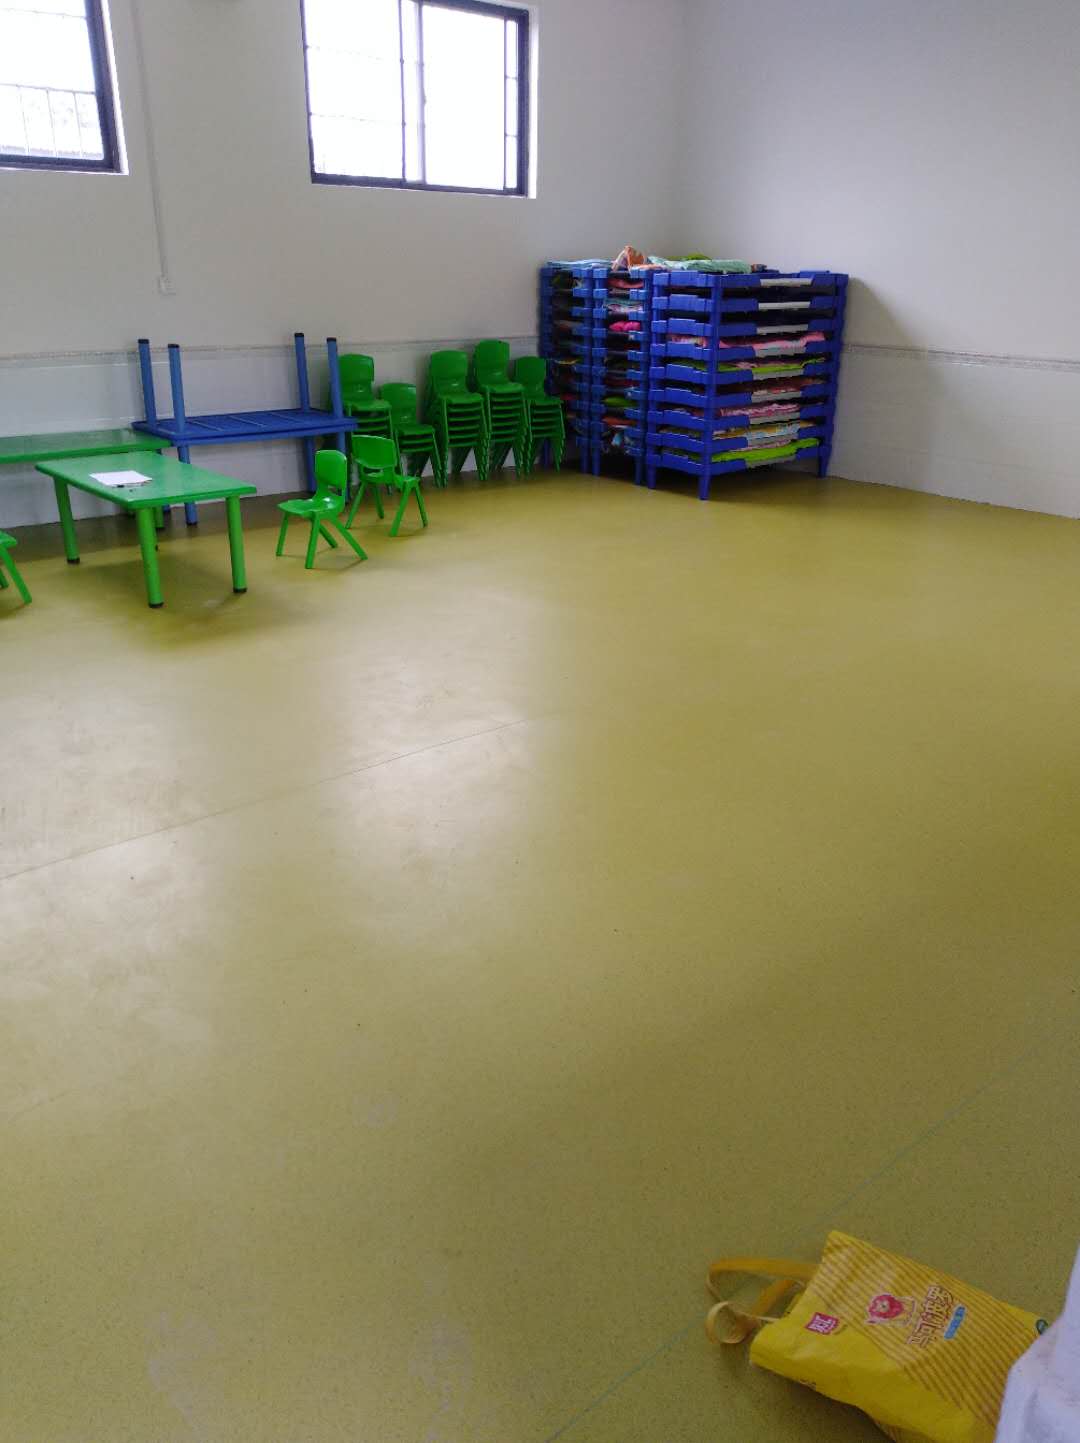 腾方卡通PVC儿童地板为暑期幼儿园装修锦上添花-腾方pvc地板4008798128